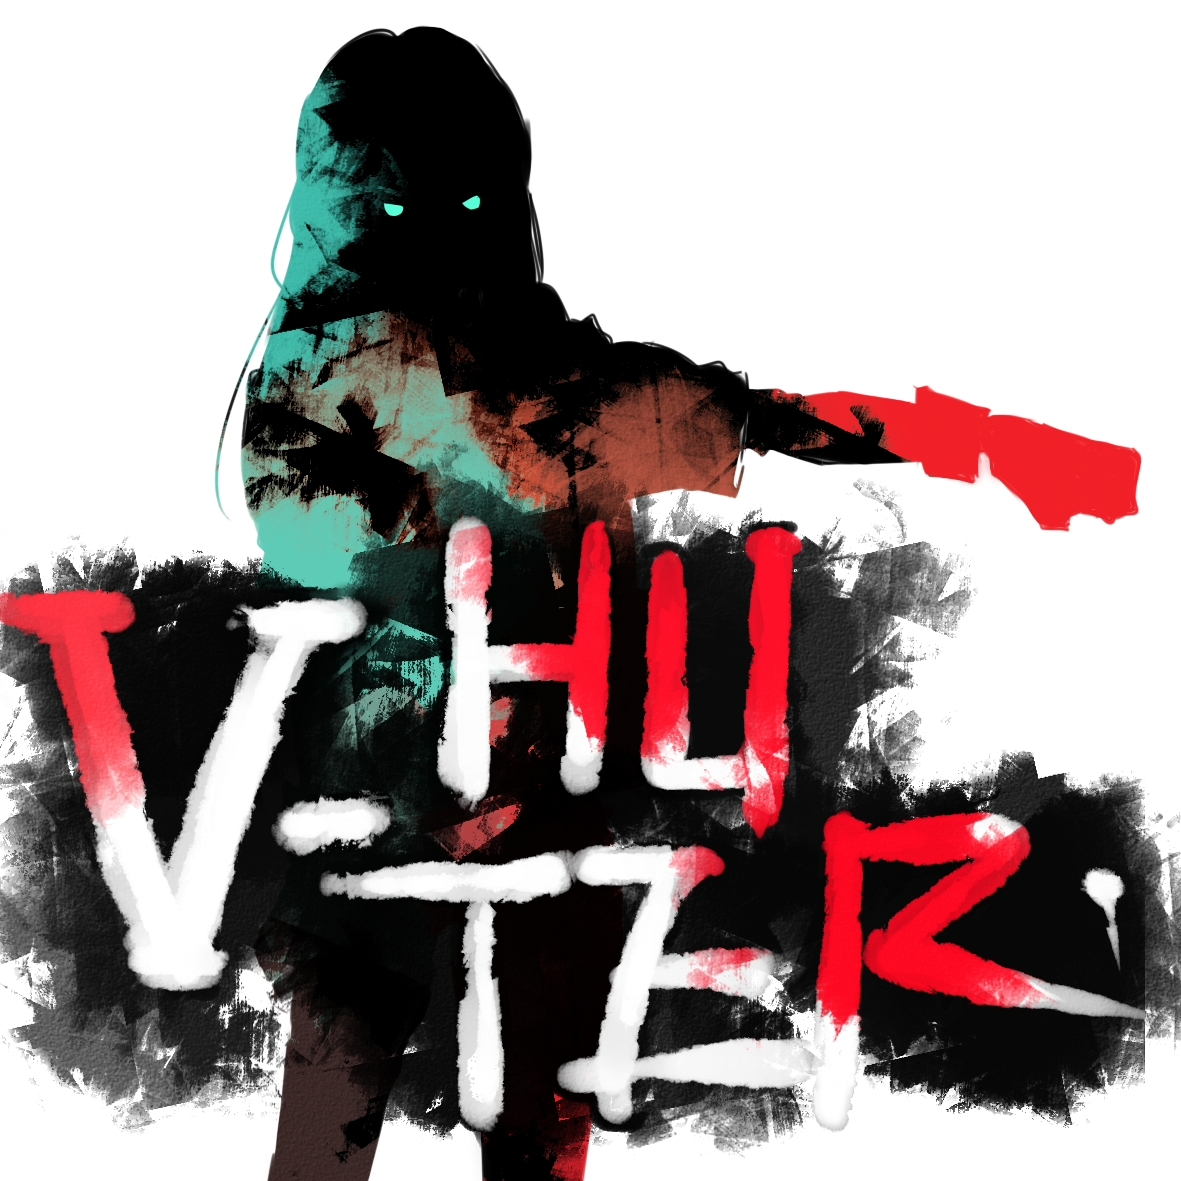 V-Hunter